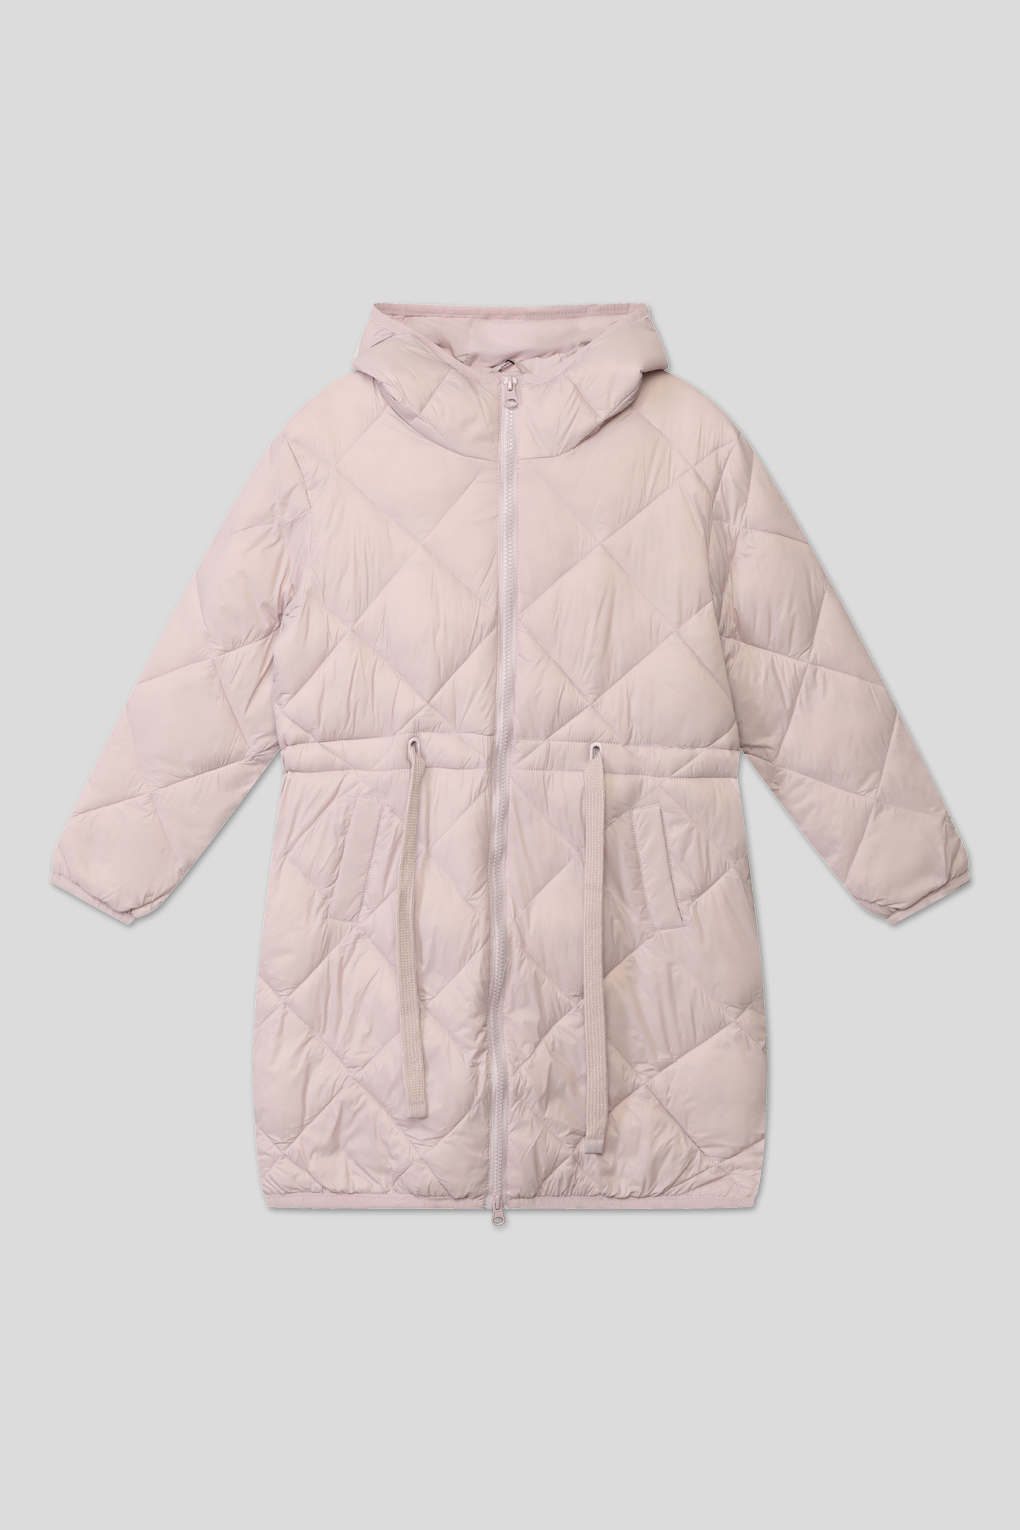 Пальто детское GIOCO G23076214, розовый, 146